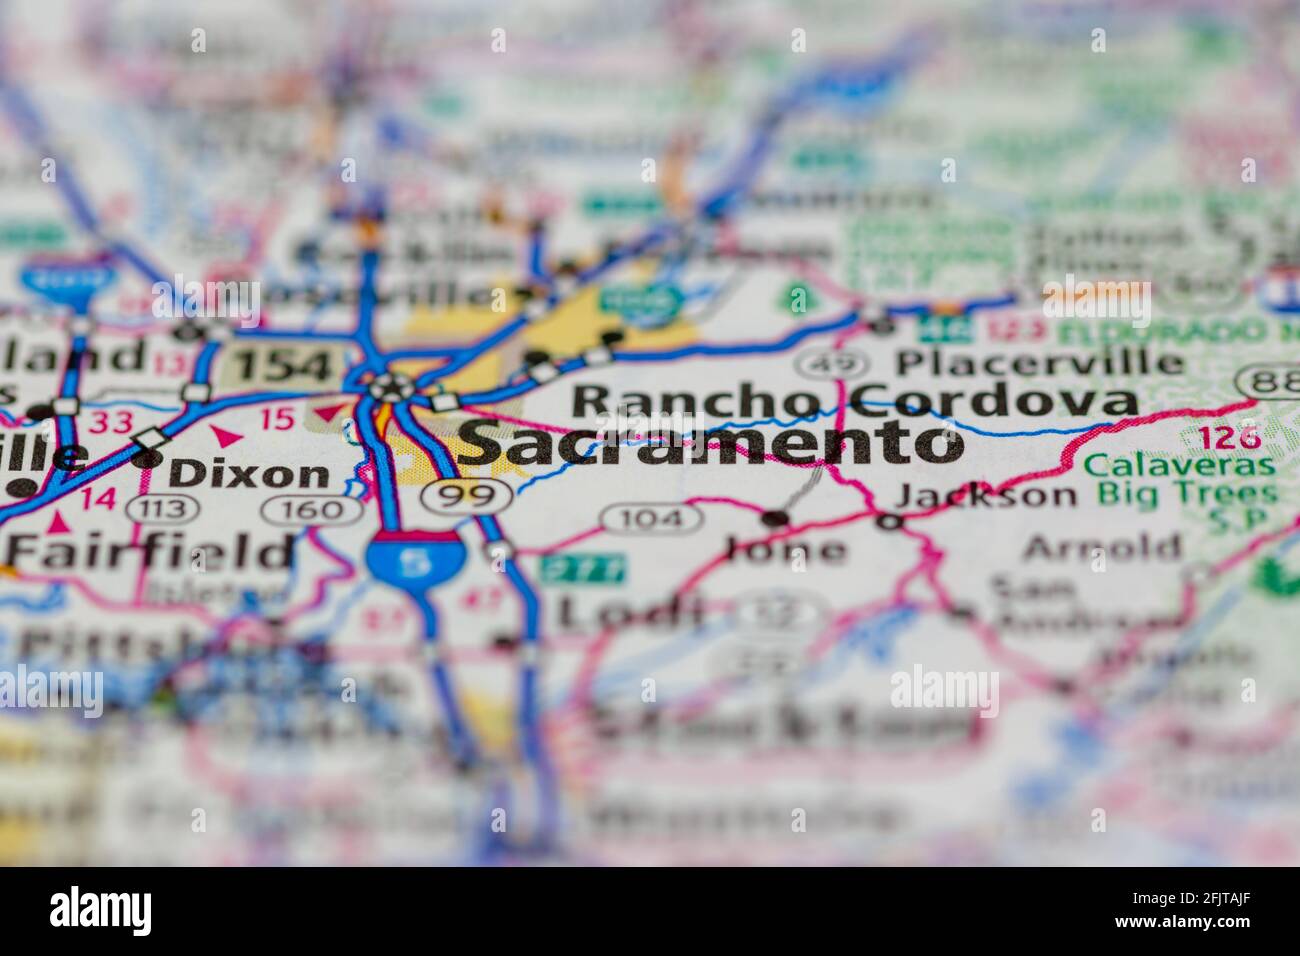 Sacramento California USA et ses environs sont représentés sur une route Carte ou carte géographique Banque D'Images